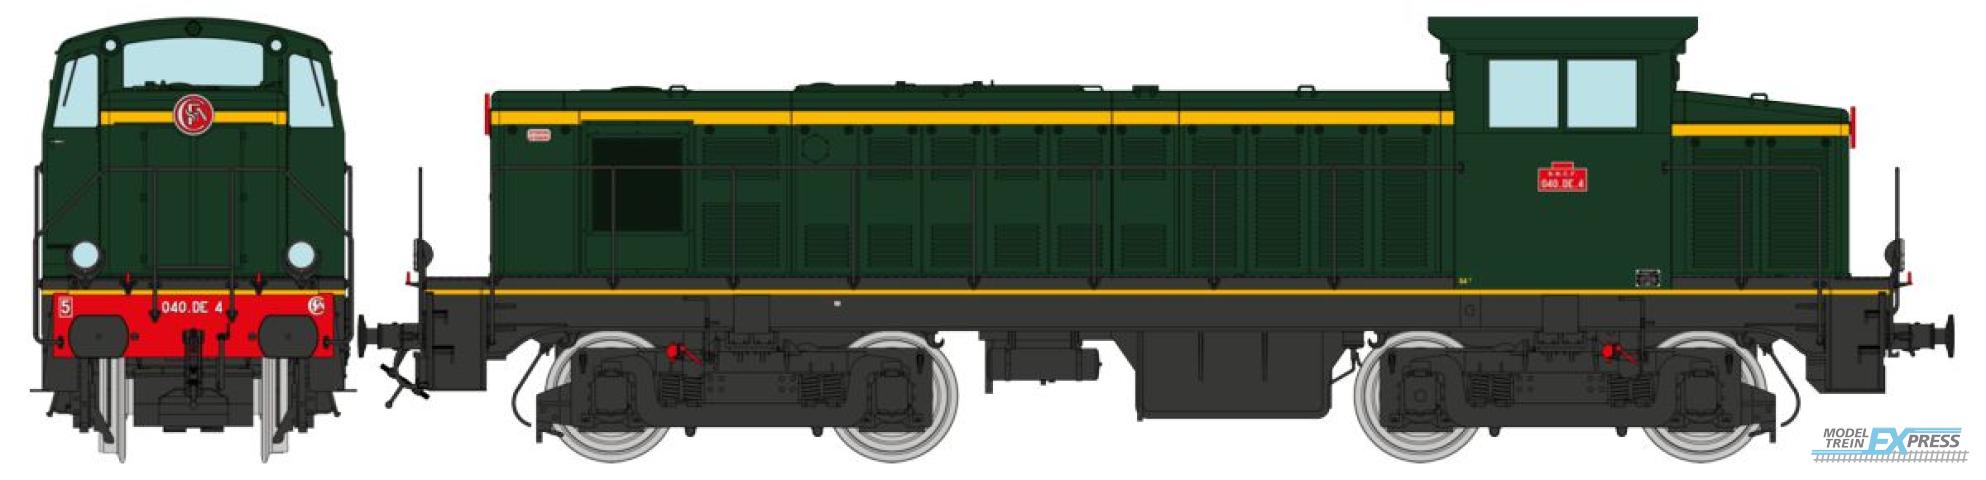 REE models JM-012 Diesel Locomotive 040 DE 04 origin, South East, Era III - ANALOG